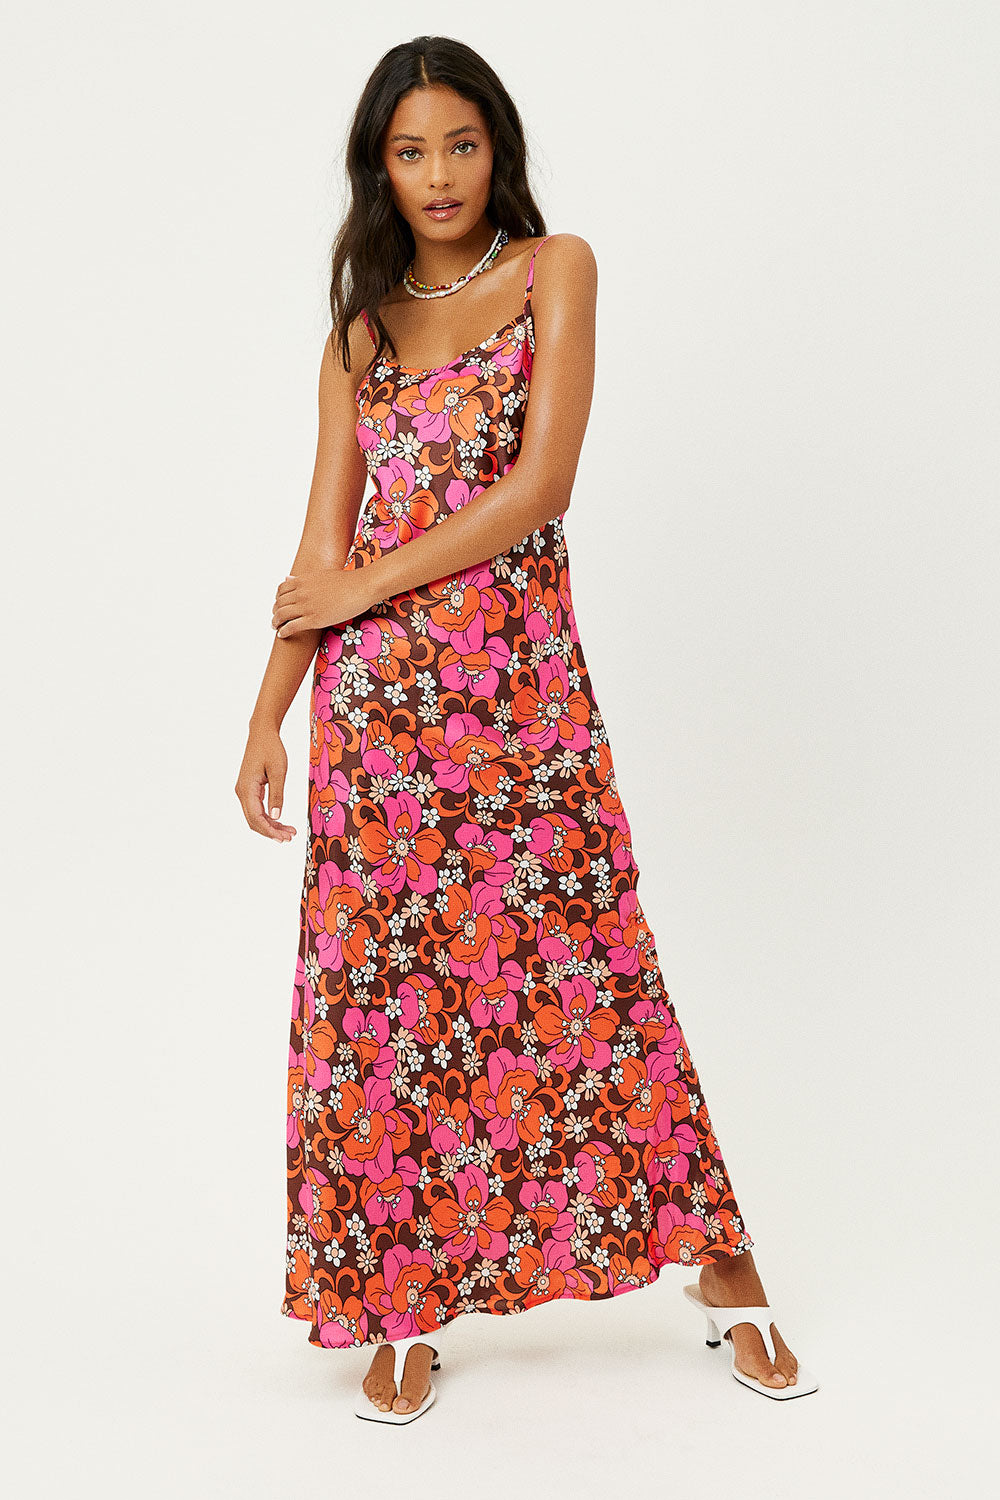 Isabel Satin Floral Dress - Tropics